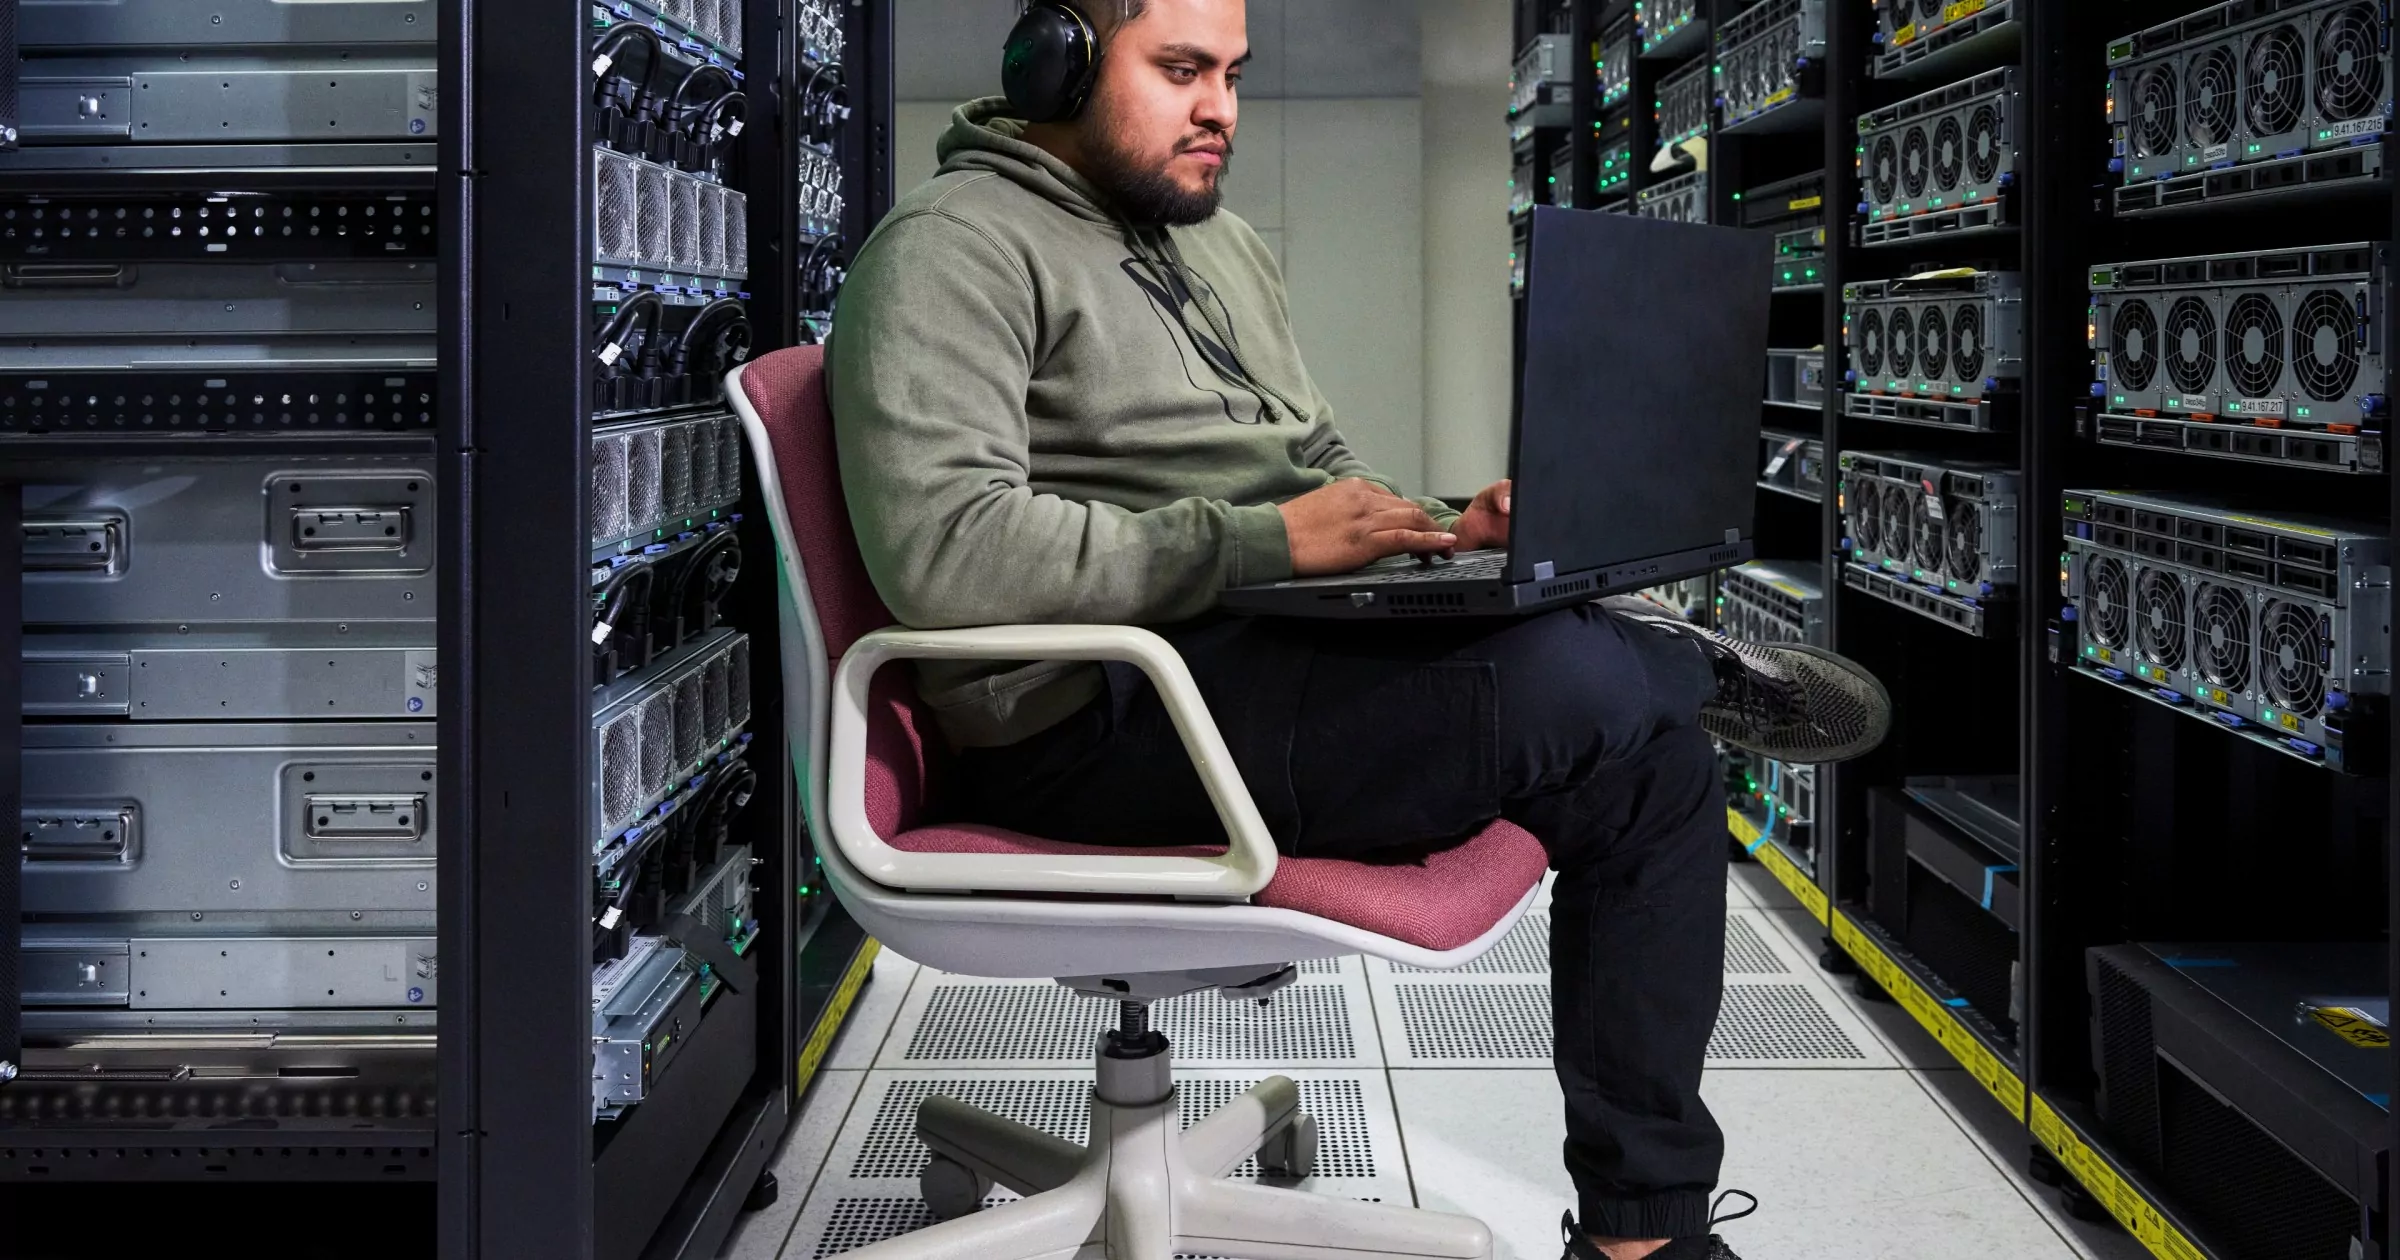 Người ngồi trên ghế trong cơ sở lưu trữ dữ liệu đeo tai nghe và làm việc trên máy tính xách tay